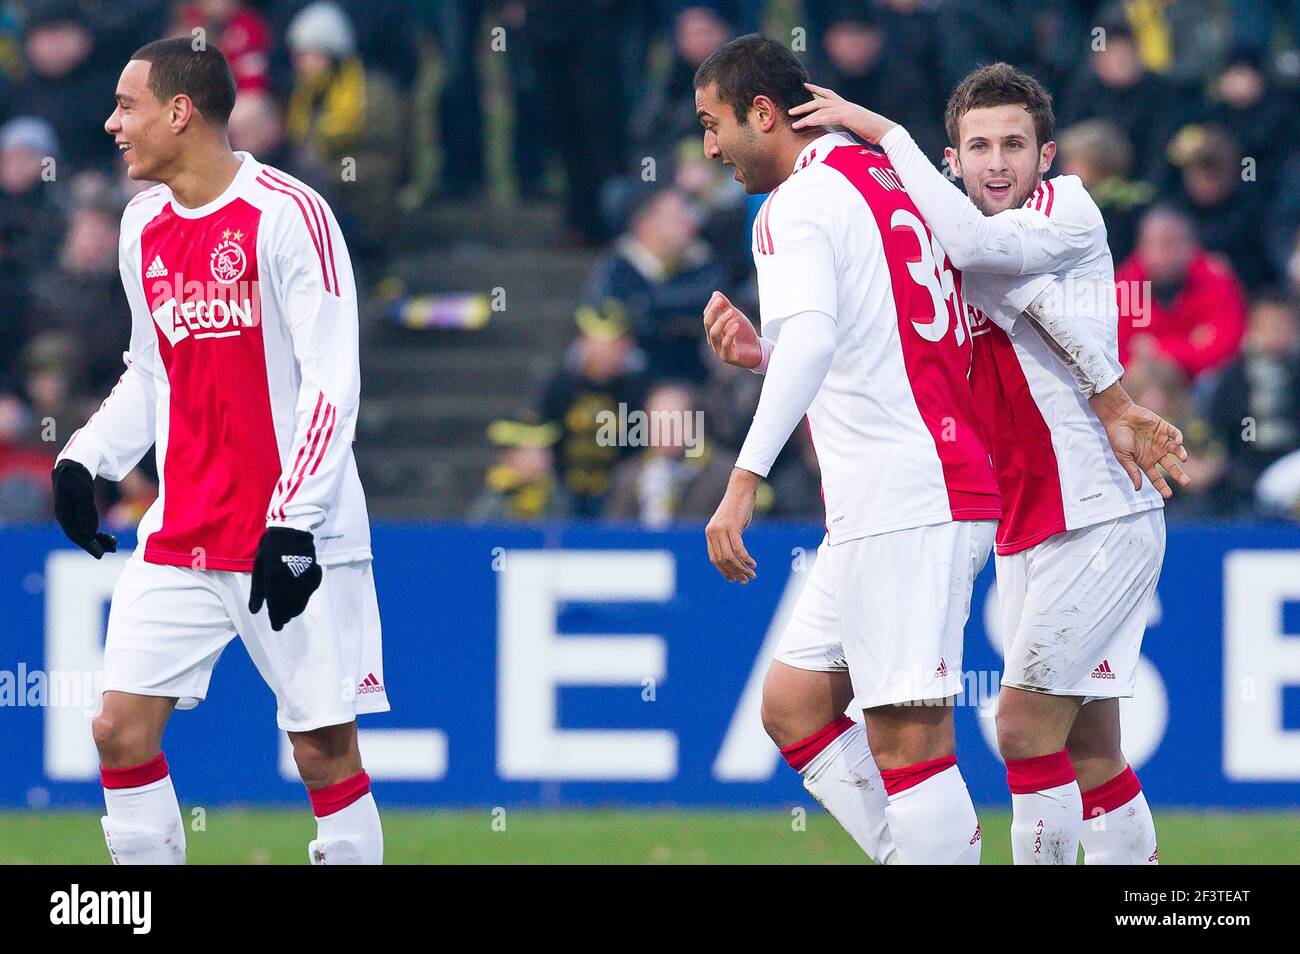 28-11-2010: Voetbal: VVV Venlo - Ajax: Venlo (L-R) Gregory van der